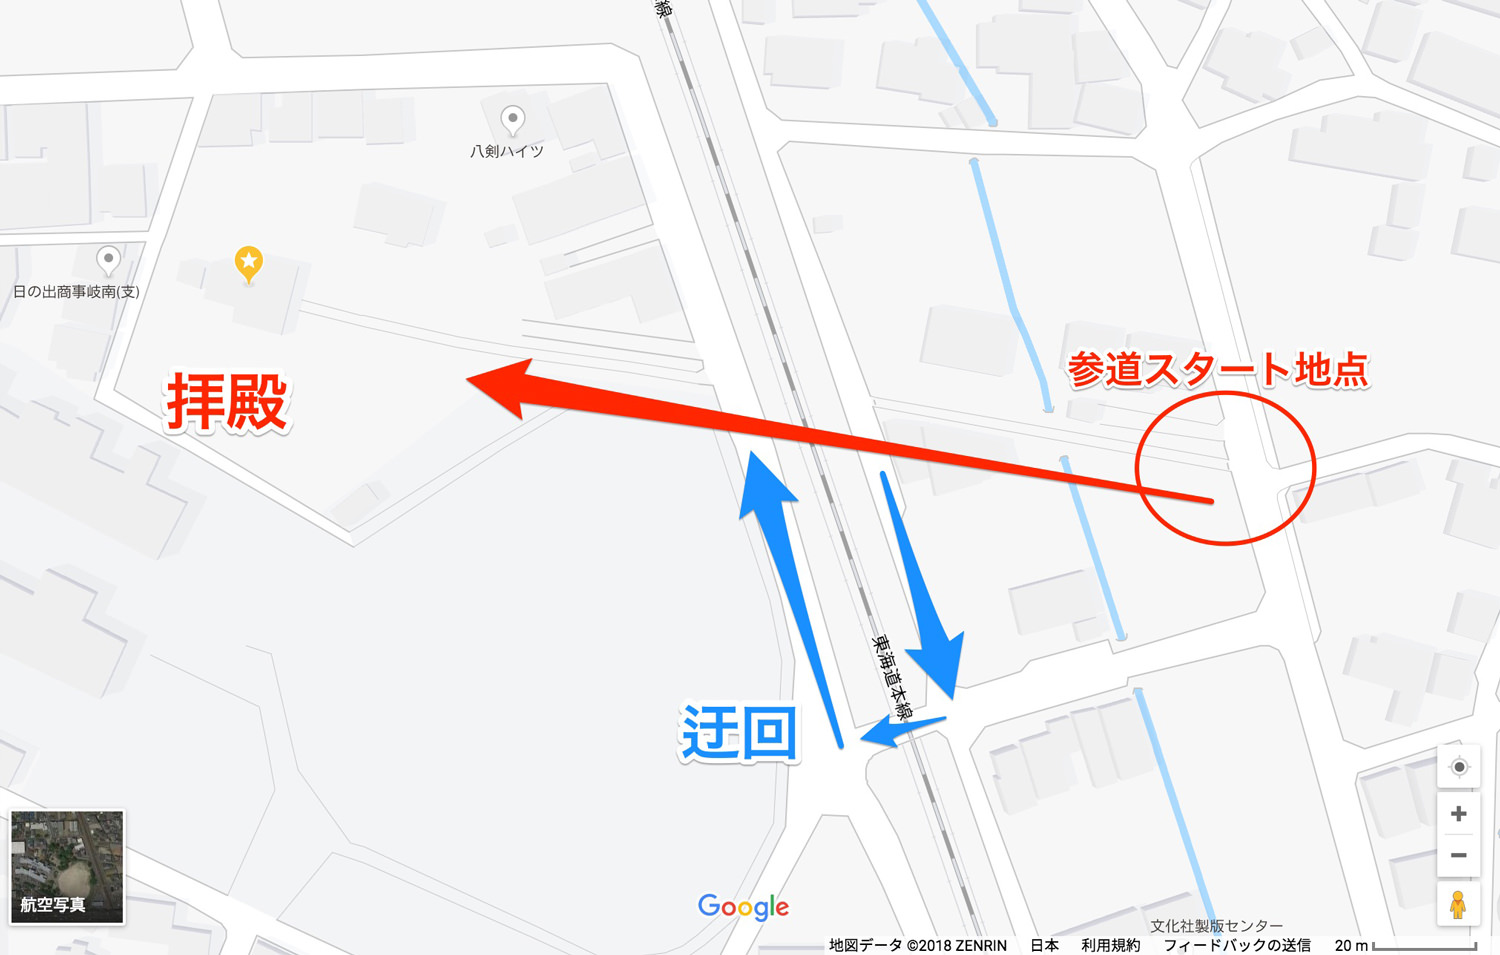 GoogleMapで八剣神社を見る